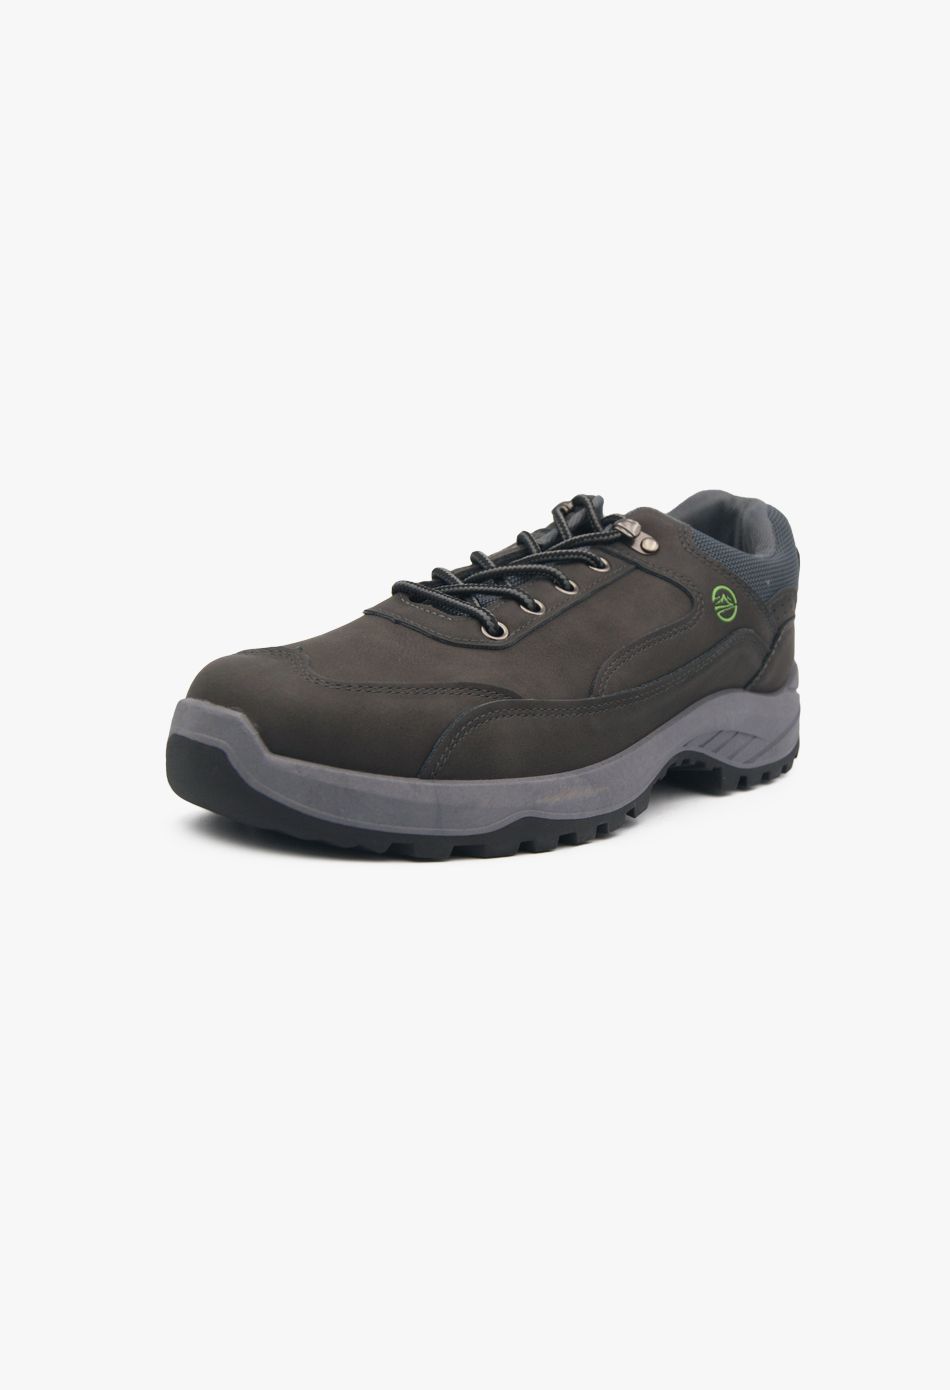 Ανδρικά Μποτάκια για Πεζοπορίας & Ορειβατικά Γκρι / GB-308-grey Πεζοπορίας & Ορειβατικά Παπούτσια joya.gr